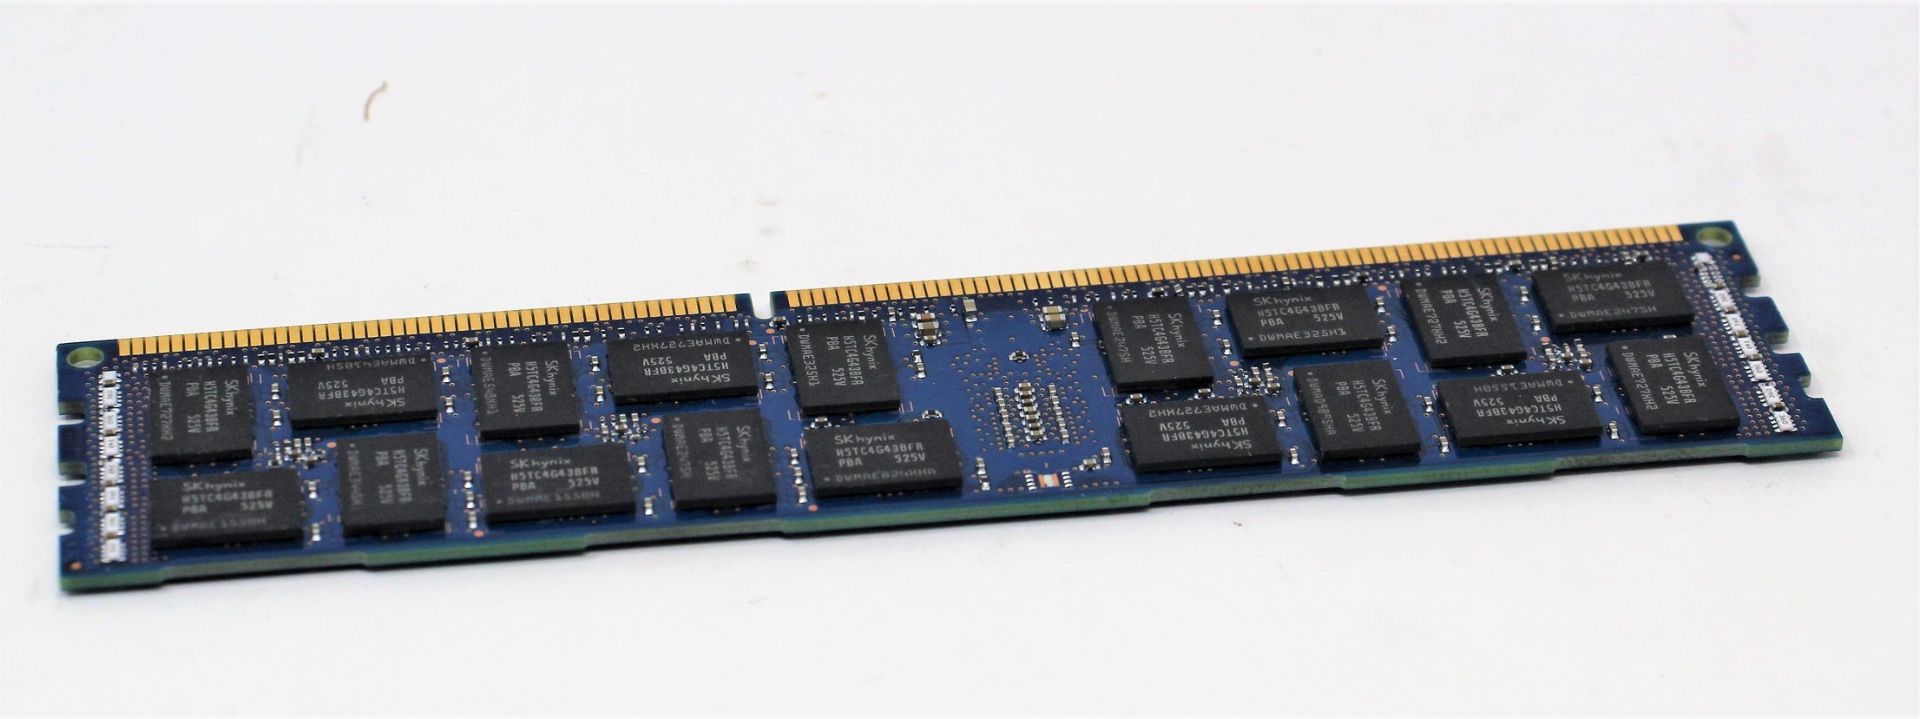 Twenty pre-owned Hynix 16GB 2RX4 PC3L-12800R DDR3 Server Memory Modules (P/N: HMT42GR7BFR4A).